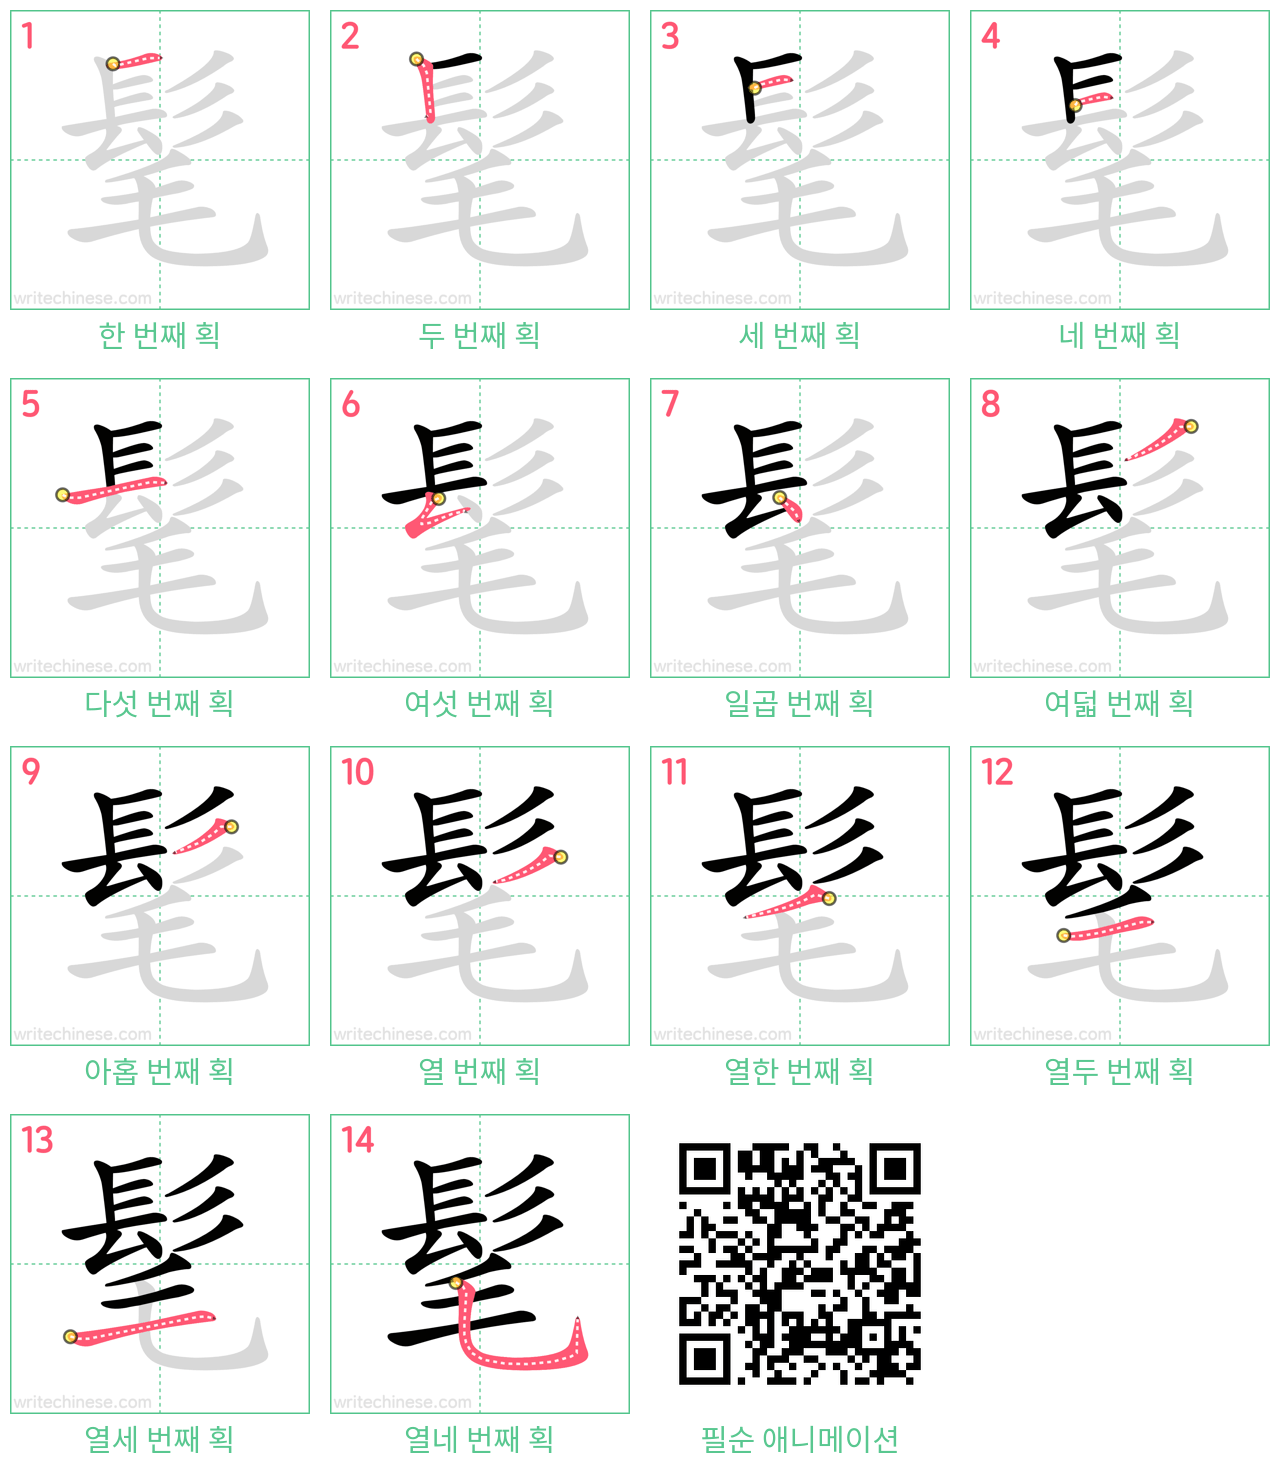 髦 step-by-step stroke order diagrams